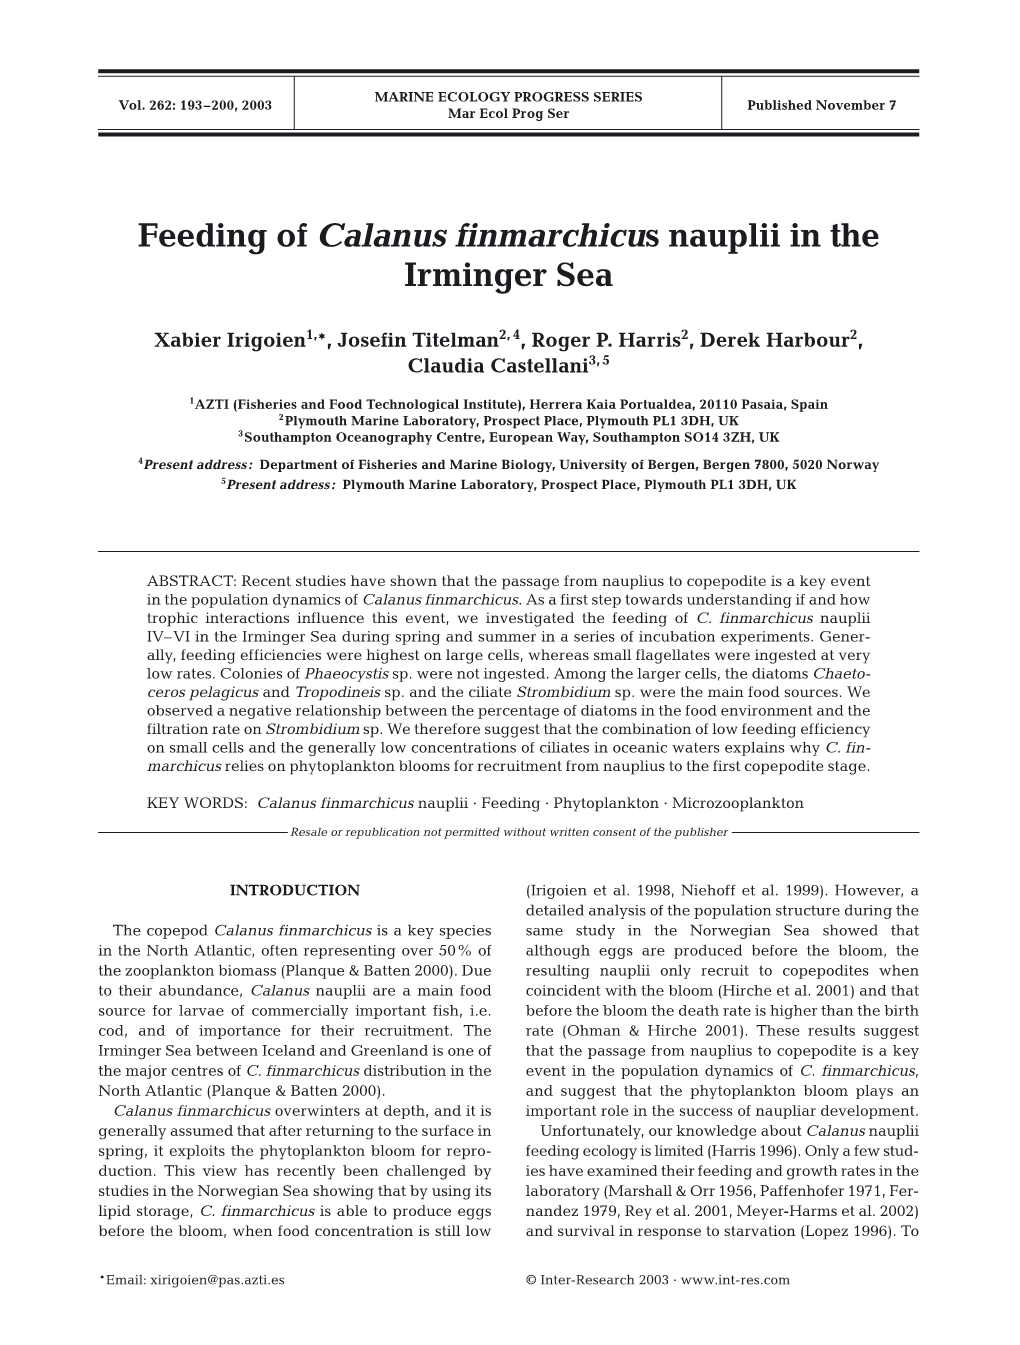 Feeding of Calanus Finmarchicus Nauplii in the Irminger Sea